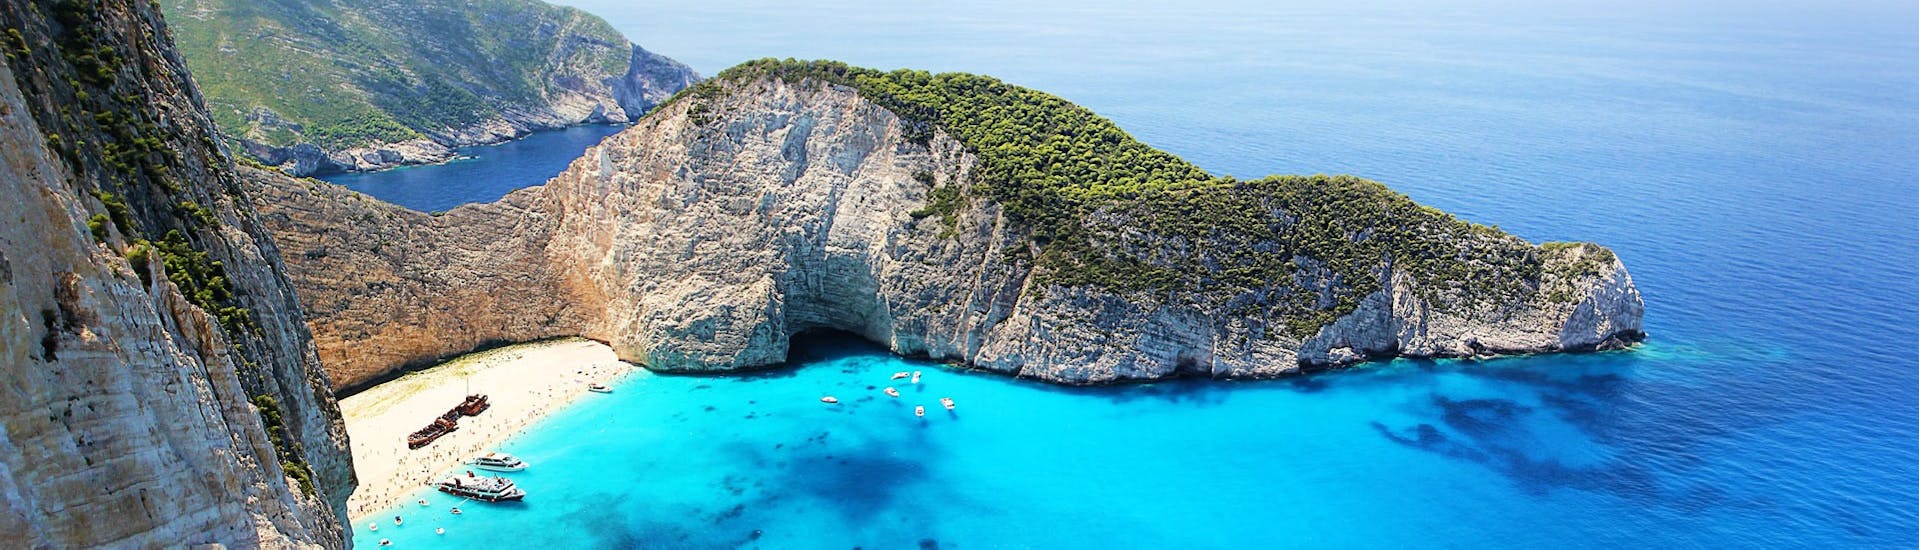 Gita in barca da Zante (Zakynthos) a Grotte Blu Zante  e bagno in mare.